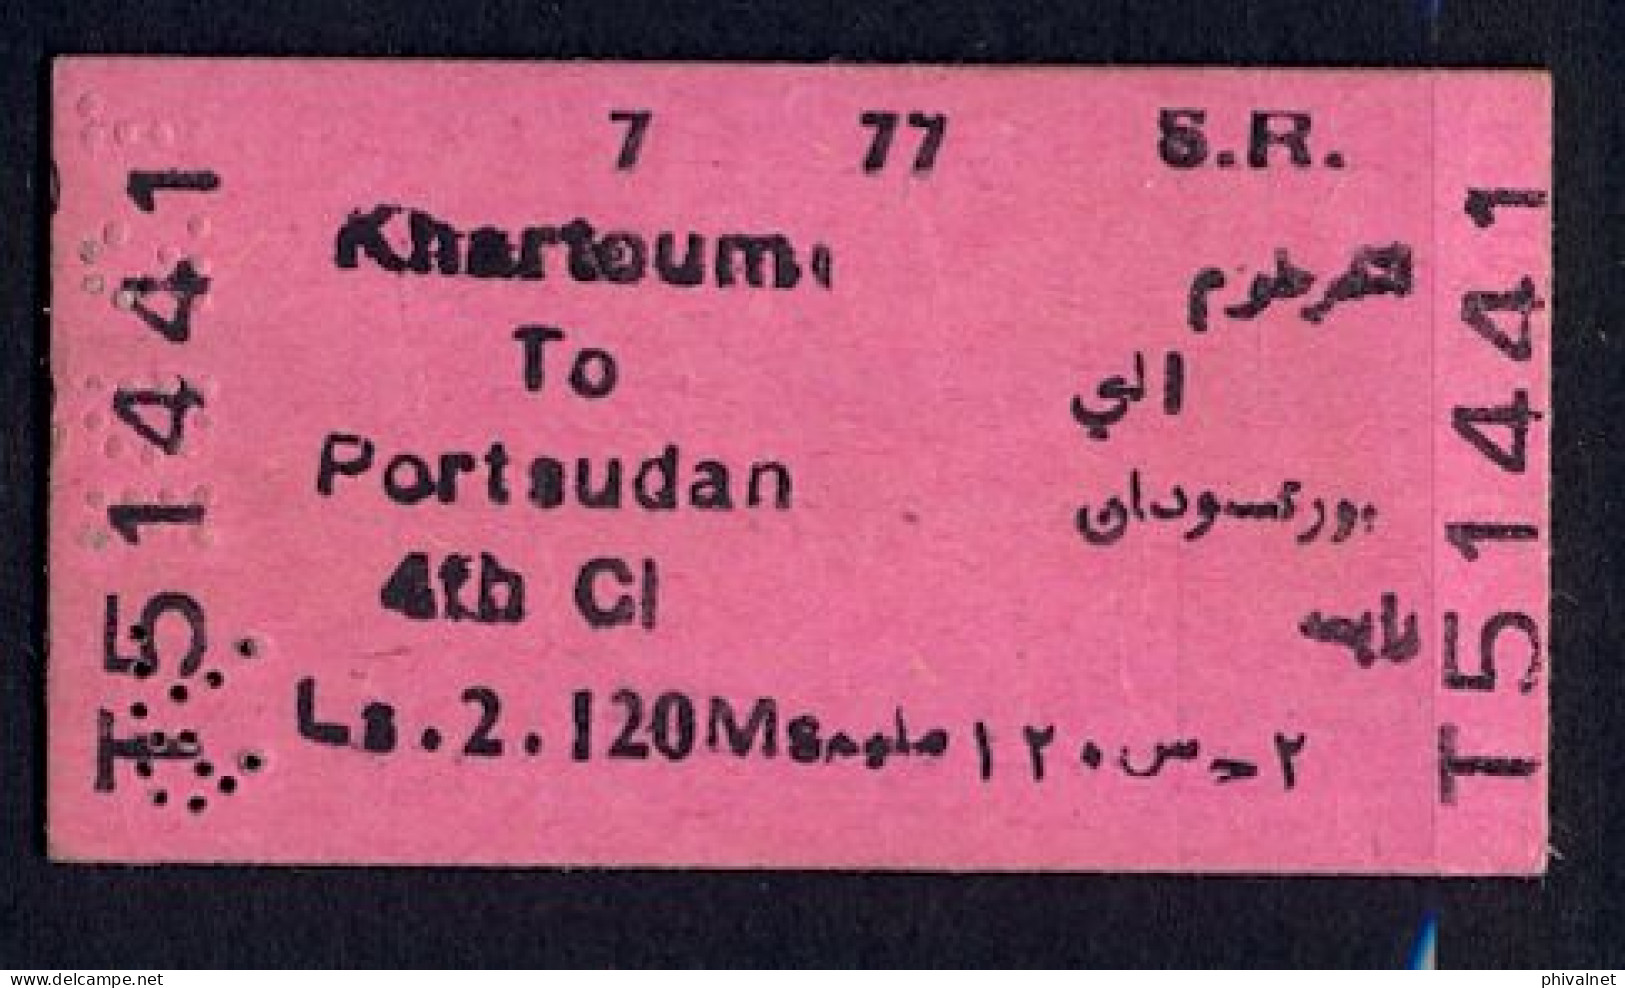 SOUDAN / SUDAN , KHARTOUM - PORT SUDAN , TICKET DE FERROCARRIL , TREN , TRAIN , RAILWAYS - Wereld